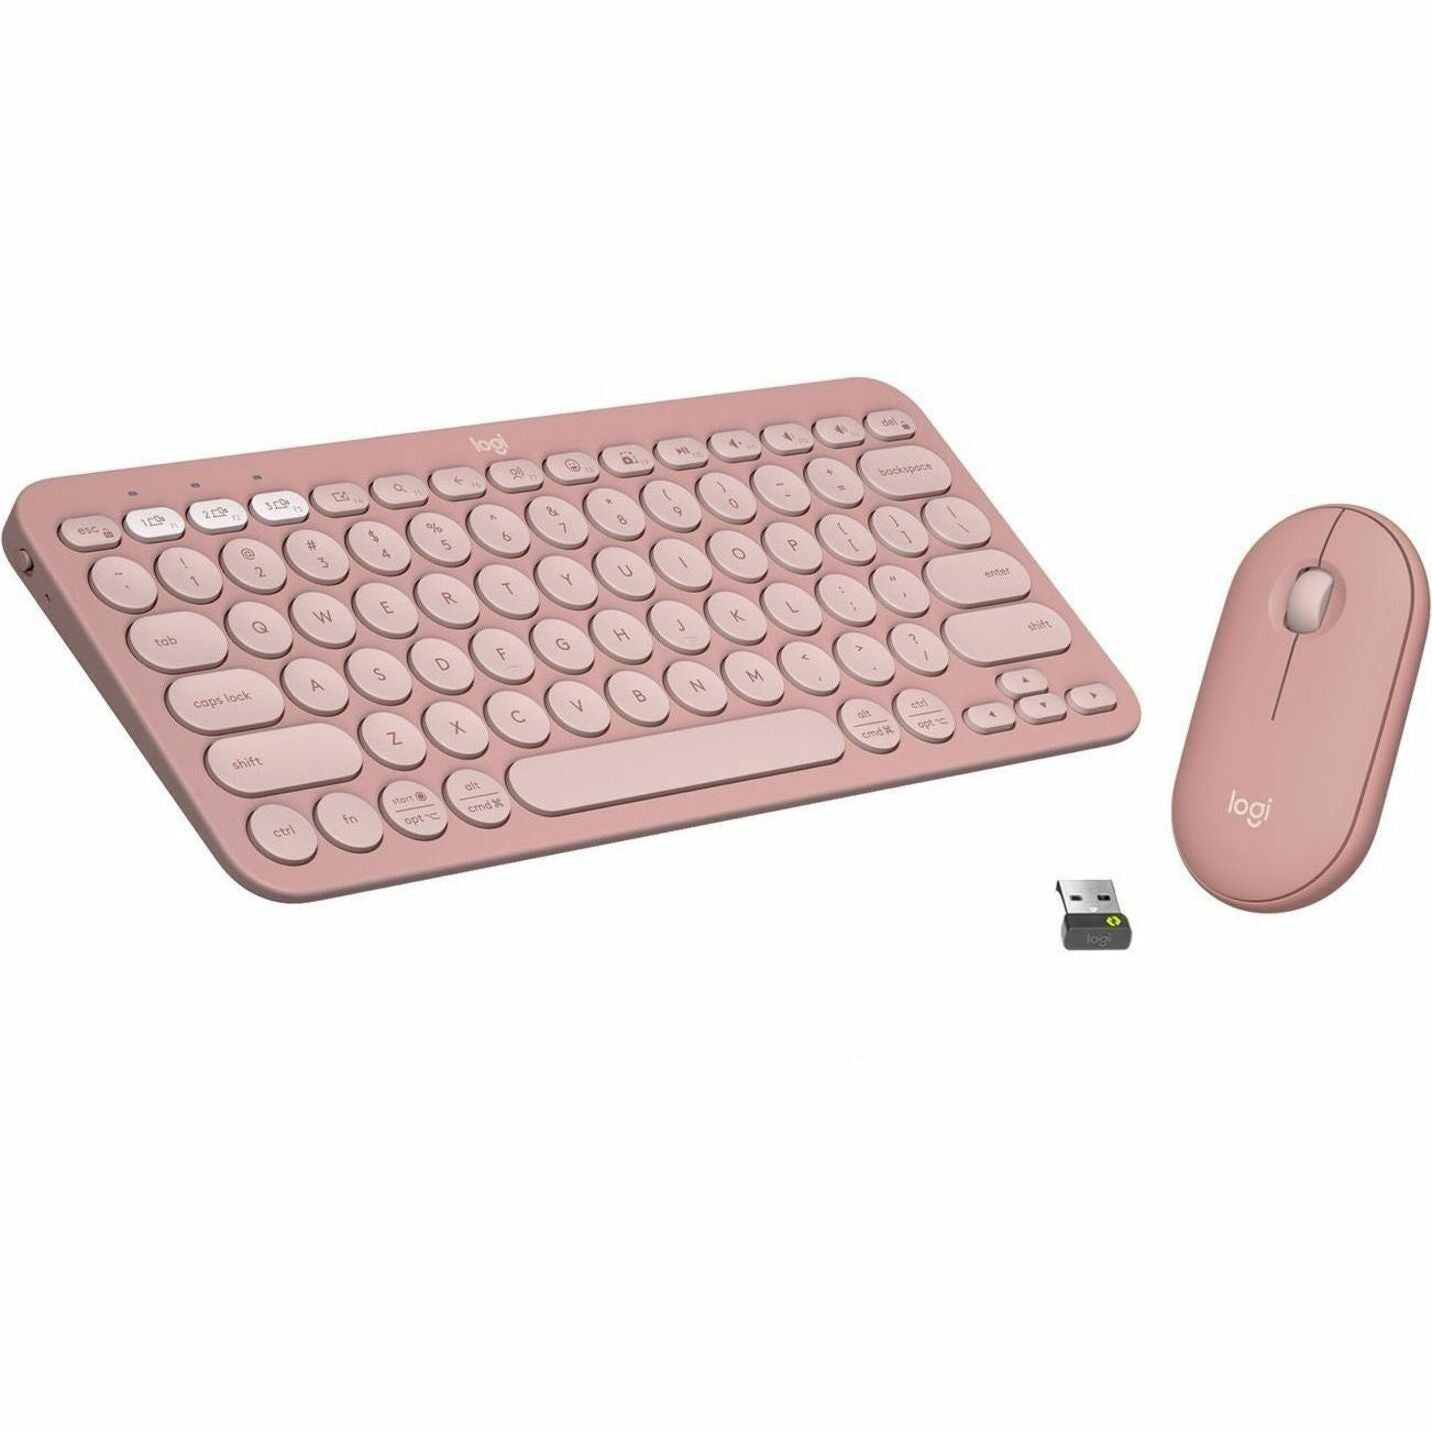 Logitech 920-012199 Pebble 2 Combo Wireless Keyboard and Mouse, Quiet Keys, Low-profile Keys, Slim